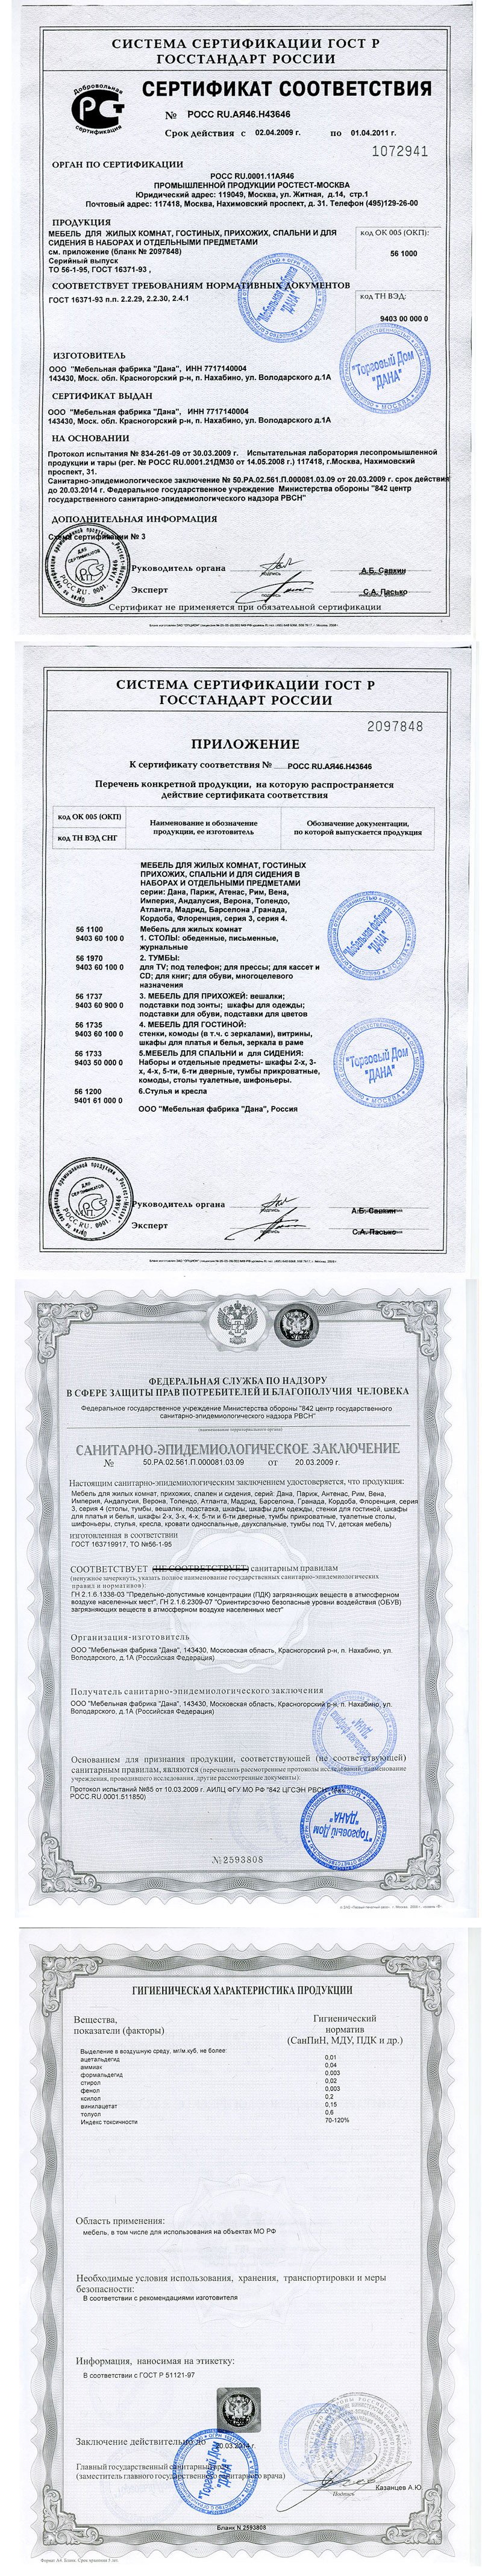 Сертификаты соответстия качества на продукцию фабрики Дана.